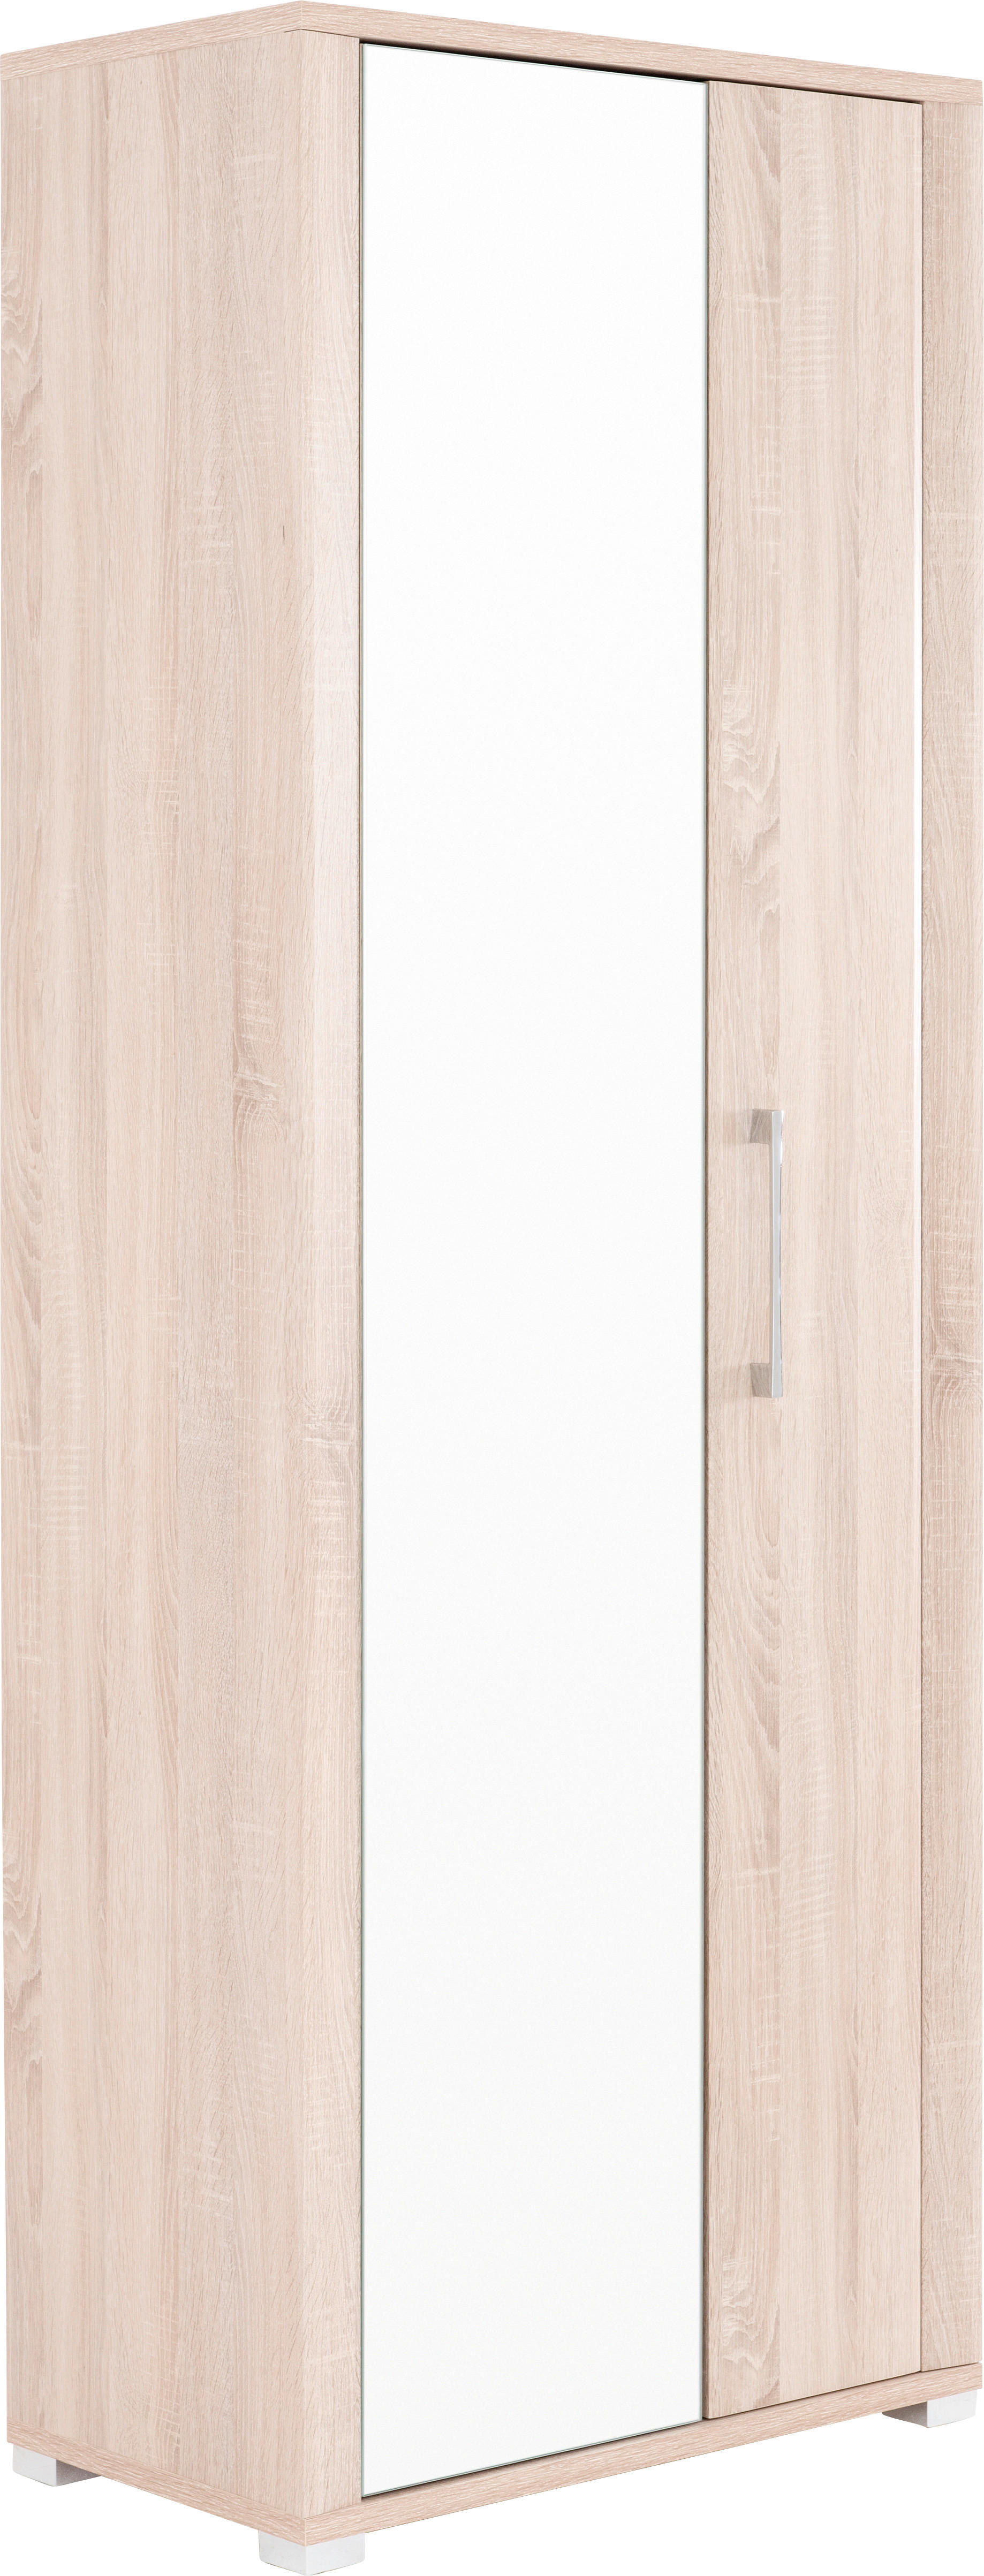 CANTUS Garderobenschrank mit Spiegel in Holzoptik